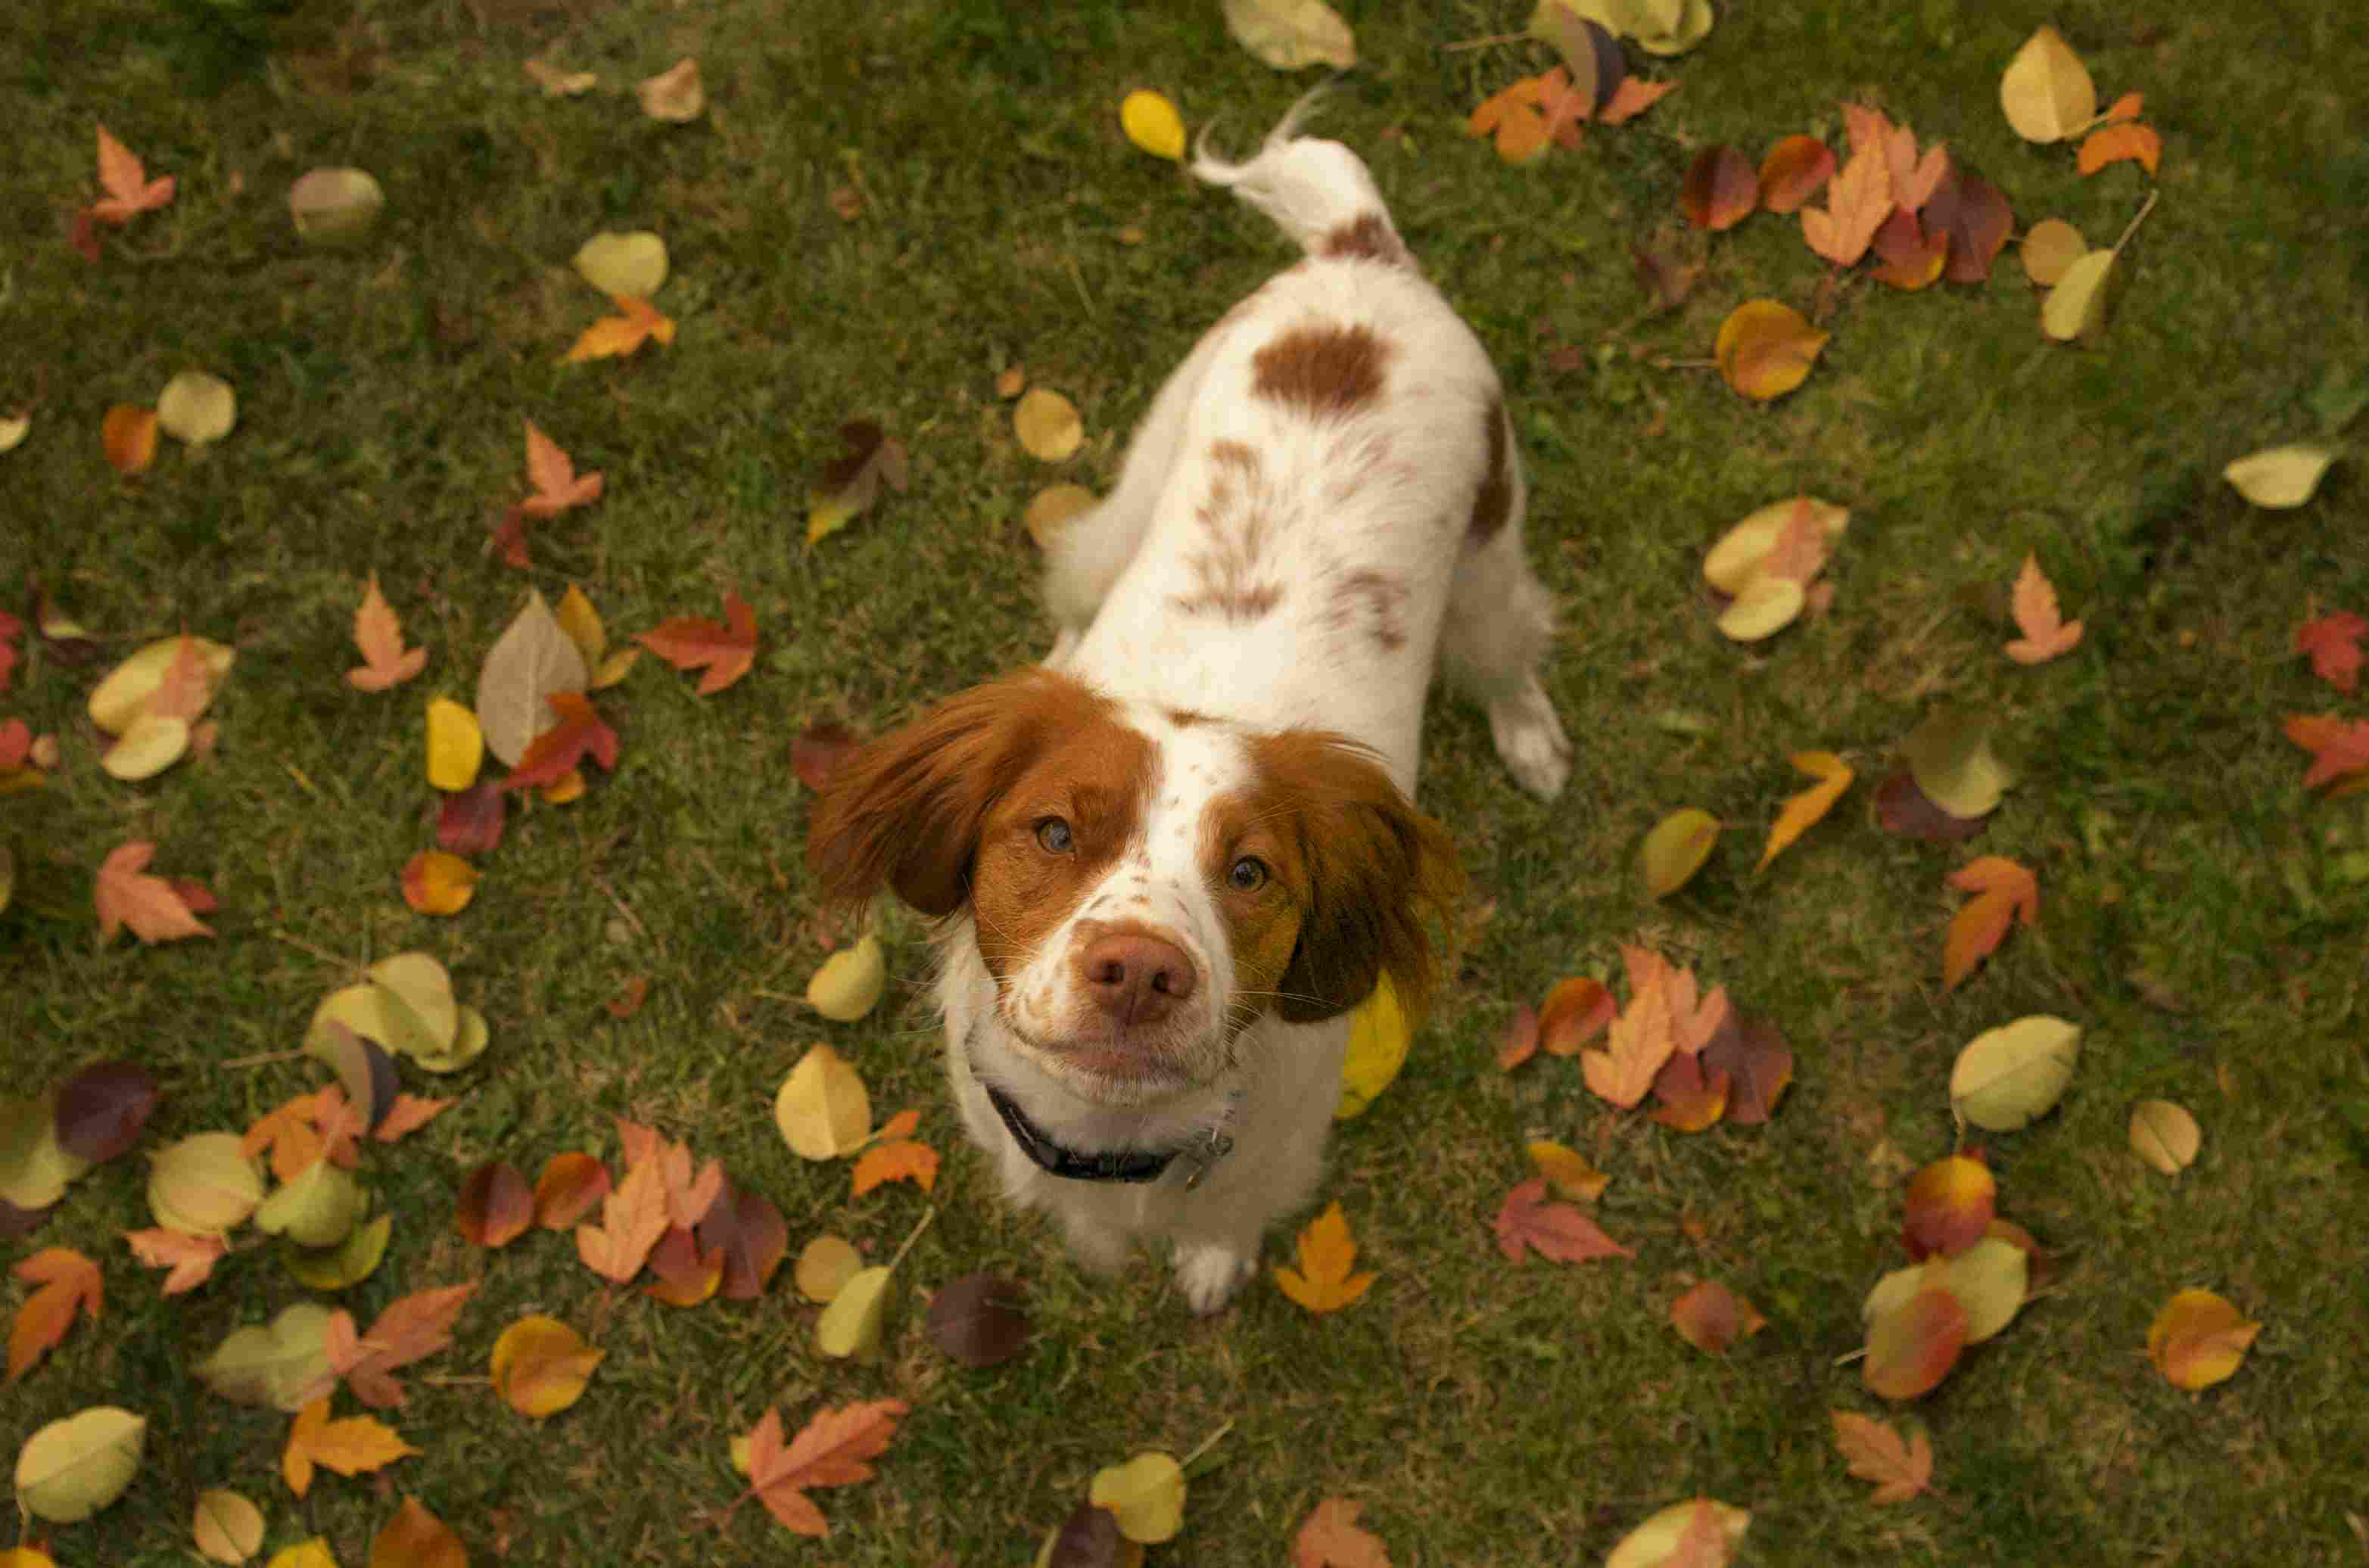 Dog amongst the fallen leaves